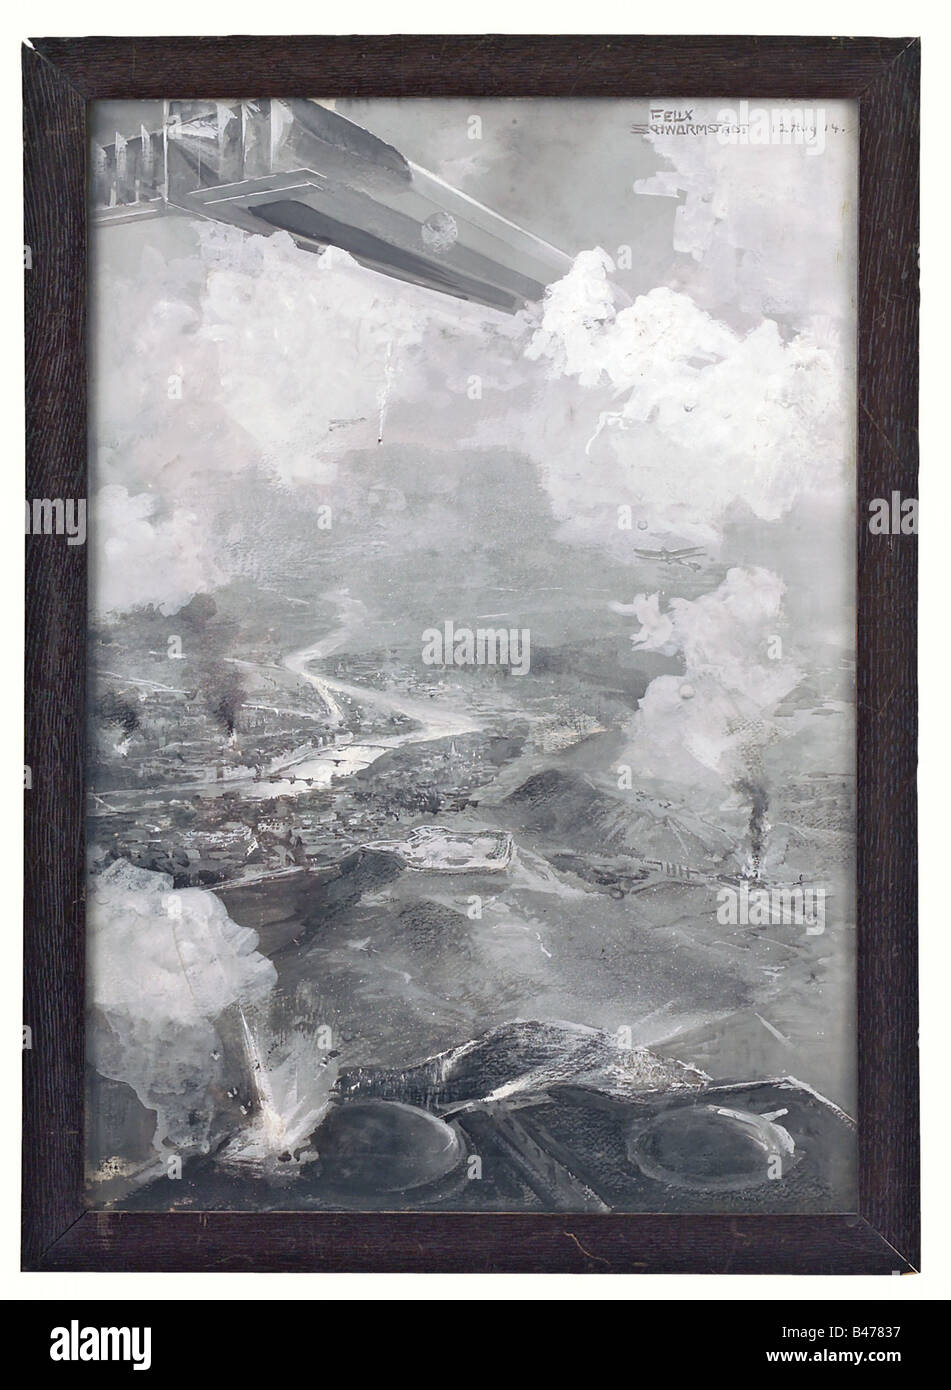 Felix Schwormstädt (1870 - 1938), LZ 21 Z.VI all'attacco a Liegi il 6 agosto 1914. Grisaille dipingere con la luce bianca. Firmato e datato, "Felix Schwormstädt 12 Agosto 14' in alto a destra. Il dirigibile è in alta quota tra le nuvole durante il bombardamento di Liegi. Un biplano sta attaccando dalla parte anteriore. In primo piano ci sono esplosioni di bombe e le nuvole di fumo sul terreno con Liegi in background. Incorniciato e sotto vetro: 58,5 x 42 cm. Questa immagine è stata pubblicata come una cartolina da Lipsia Illustrierten Zeitung (Illust, Additional-Rights-Clearance-Info-Not-Available Foto Stock